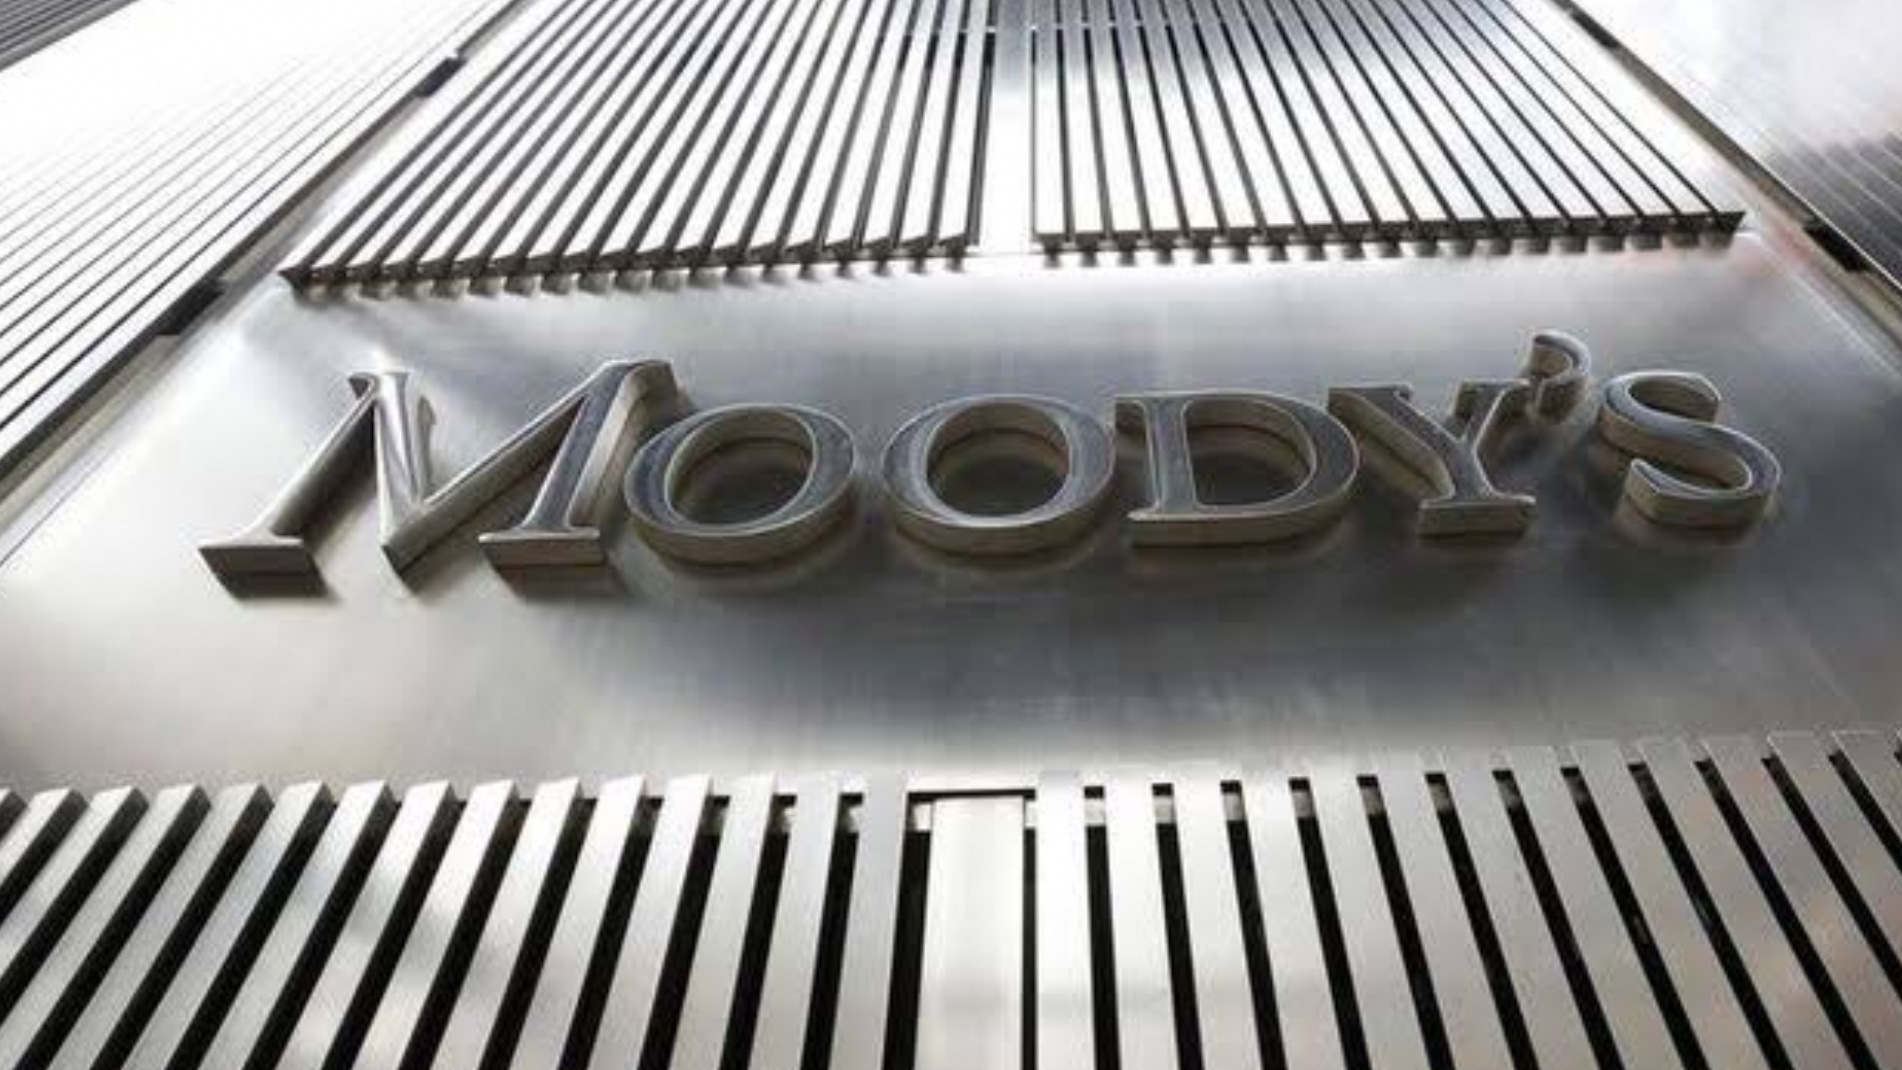 Moody’s: Türk ekonomisi 2019 ortasına kadar daralacak